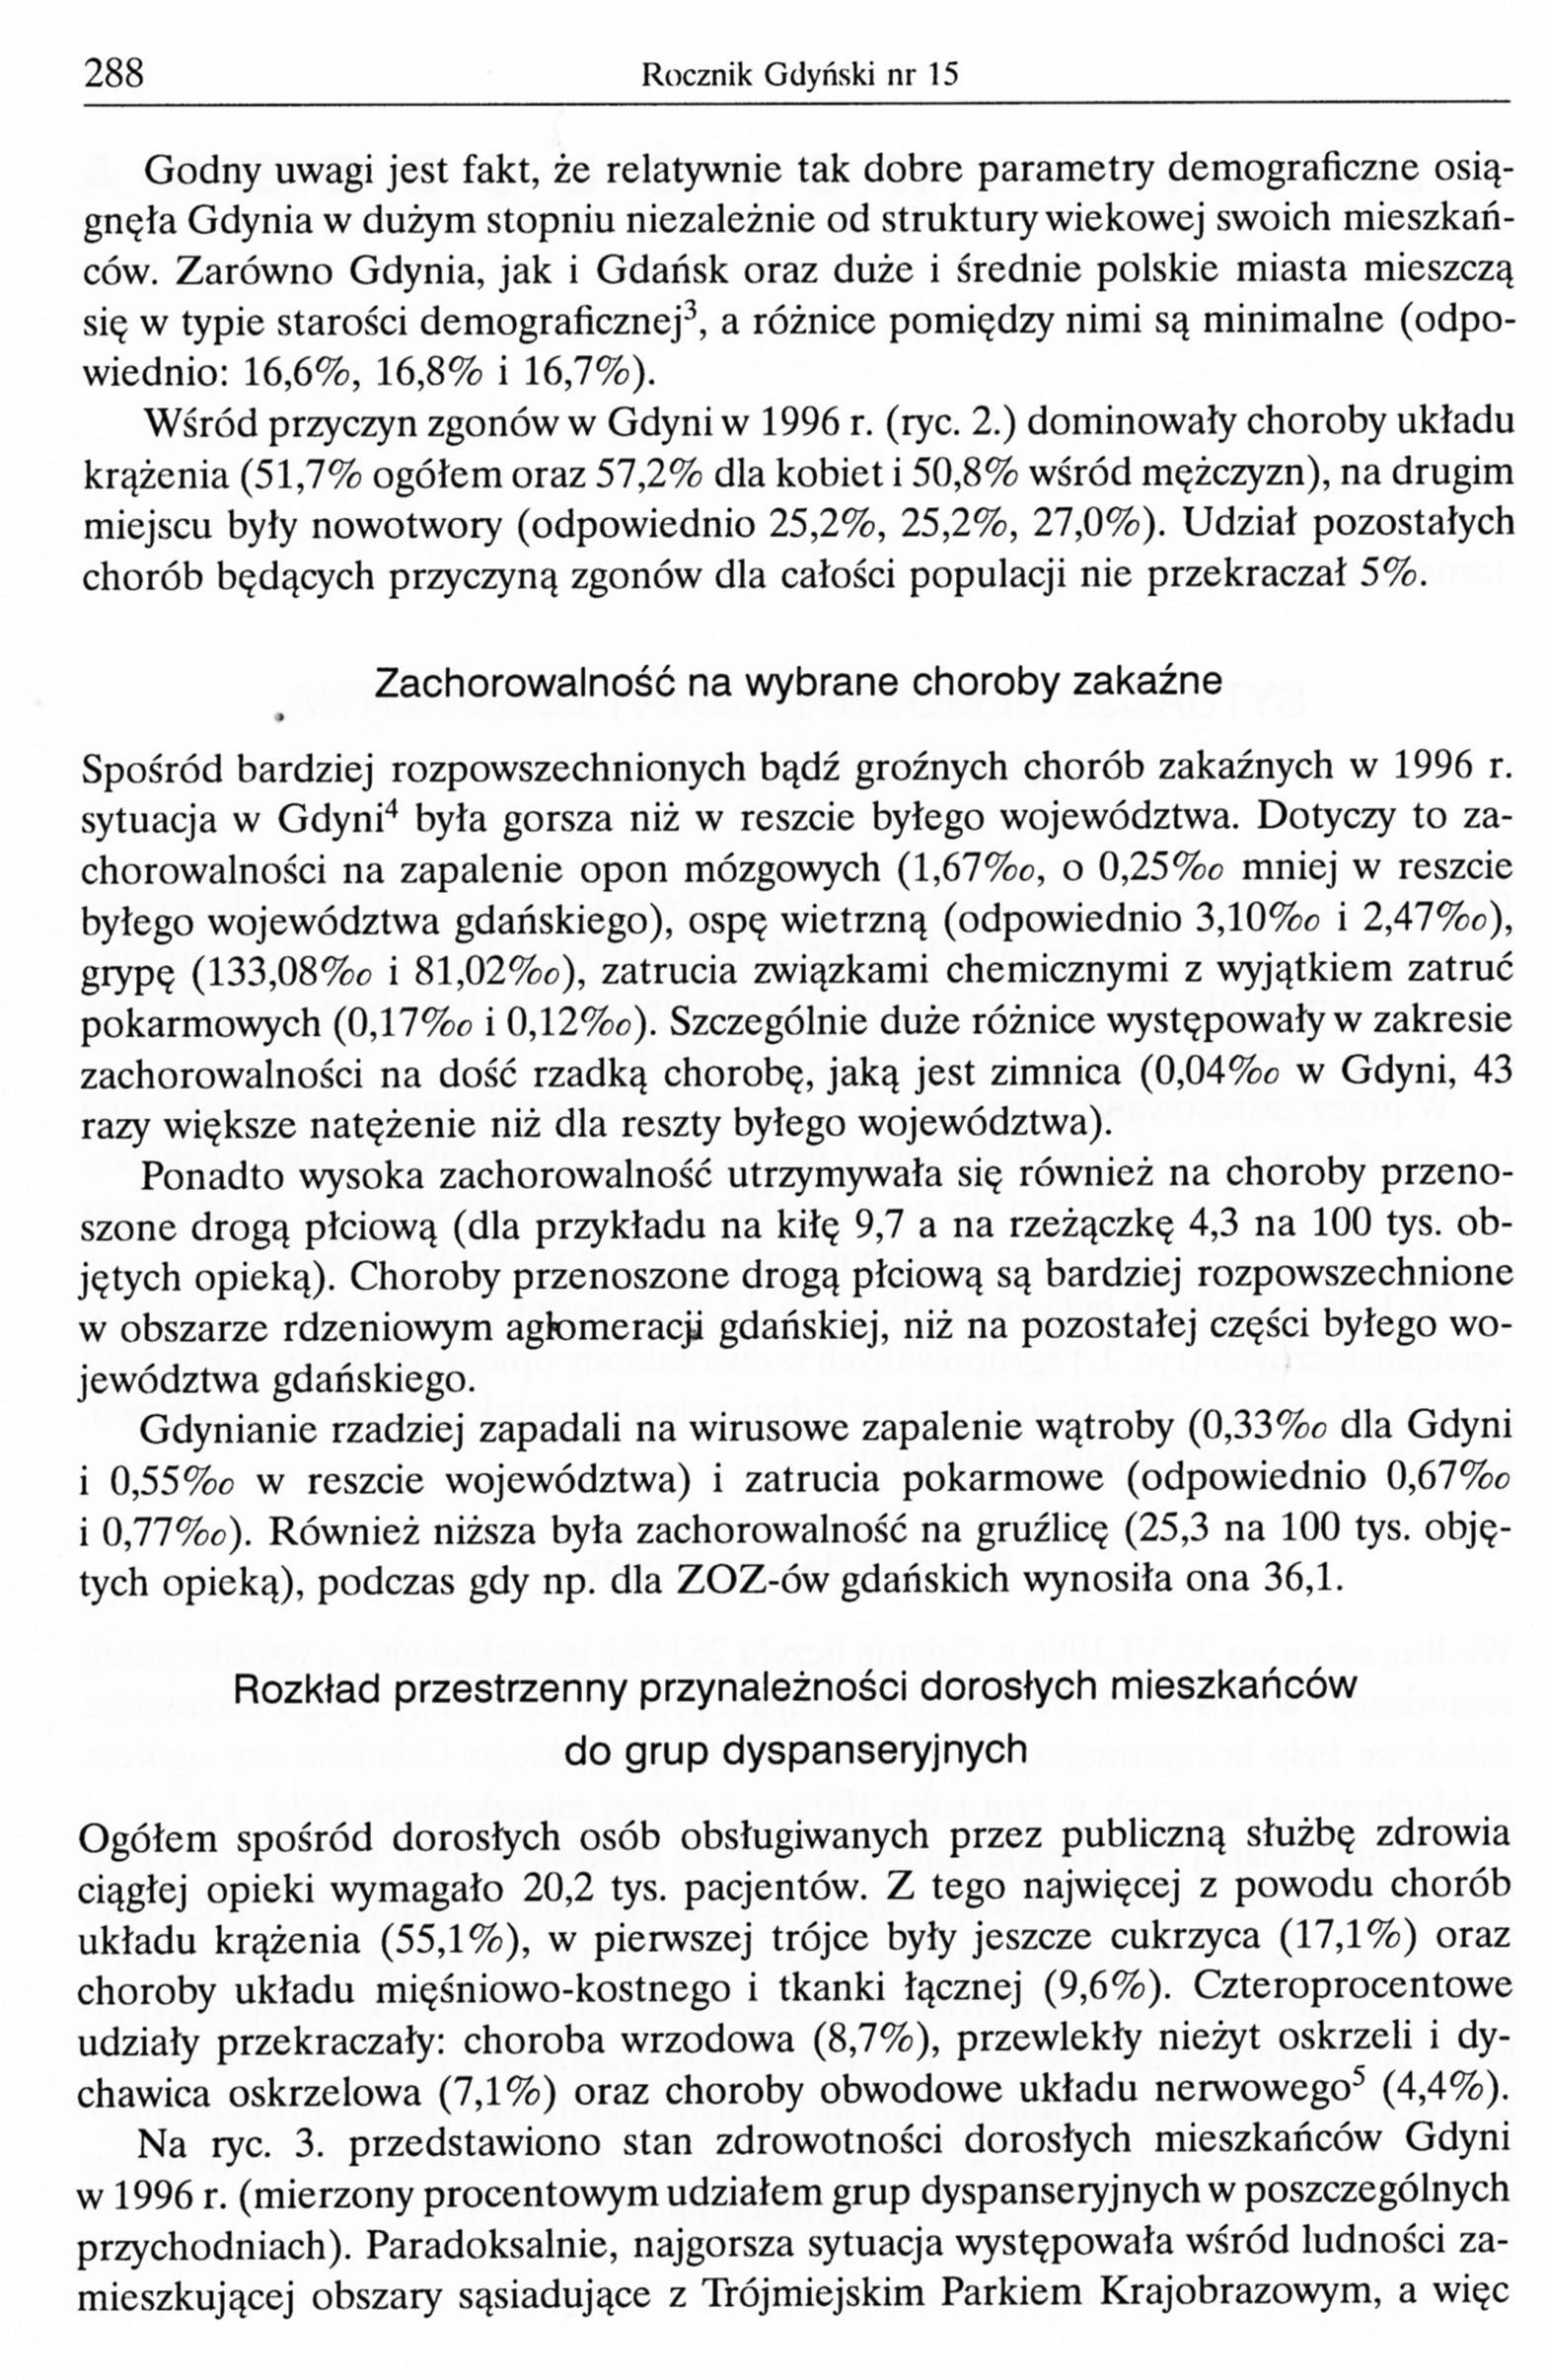 Sytuacja demograficzna i zdrowotna mieszkańców Gdyni